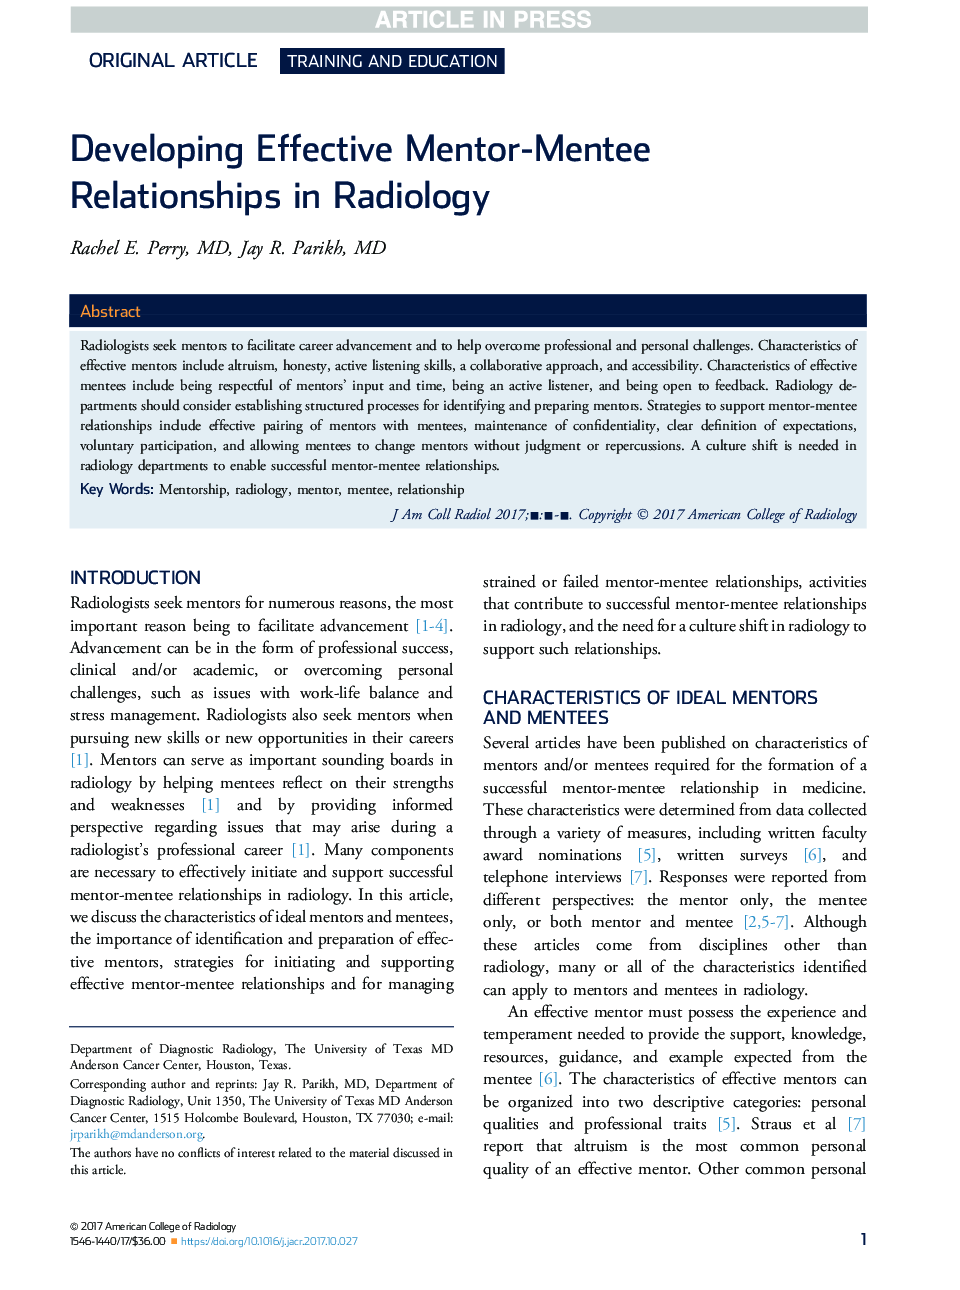 توسعه روابط مؤثر و موثر در رادیولوژی 